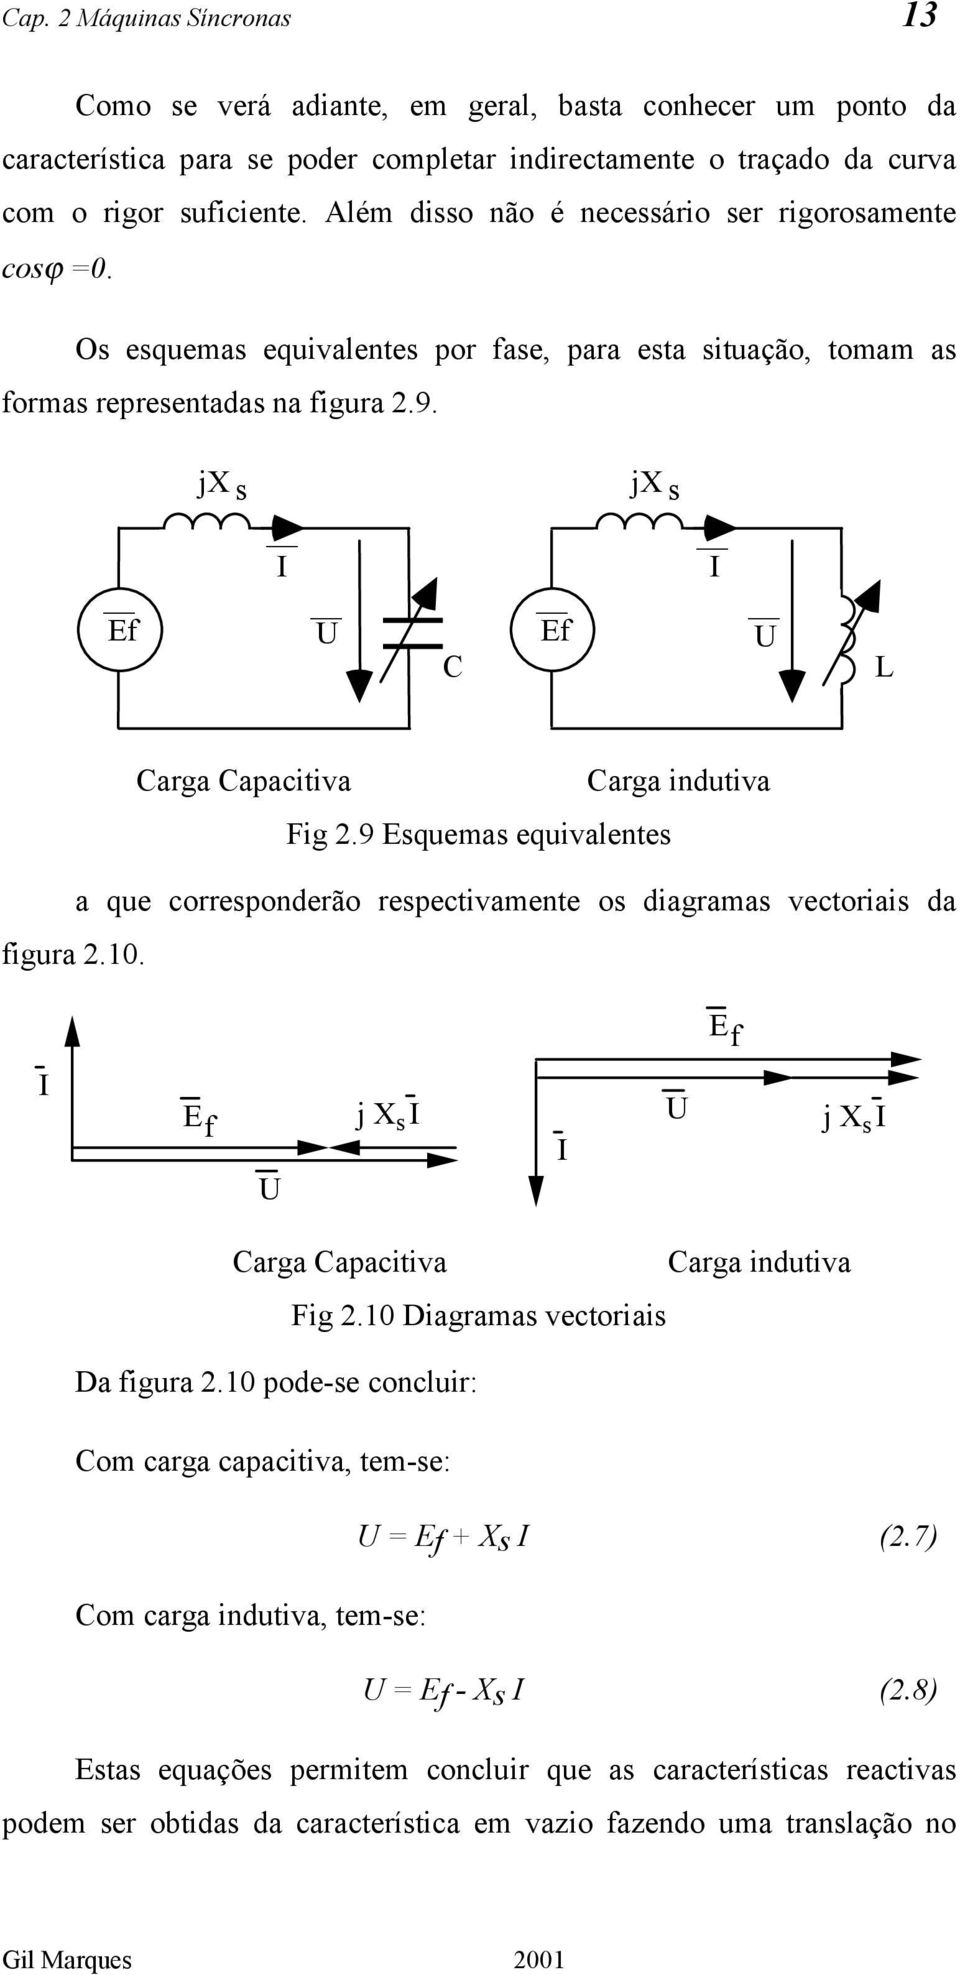 Ef jx s C Ef jx s L Carga Capacitiva Carga indutiva Fig 2.9 Esquemas equivalentes a que corresponderão respectivamente os diagramas vectoriais da figura 2.10.